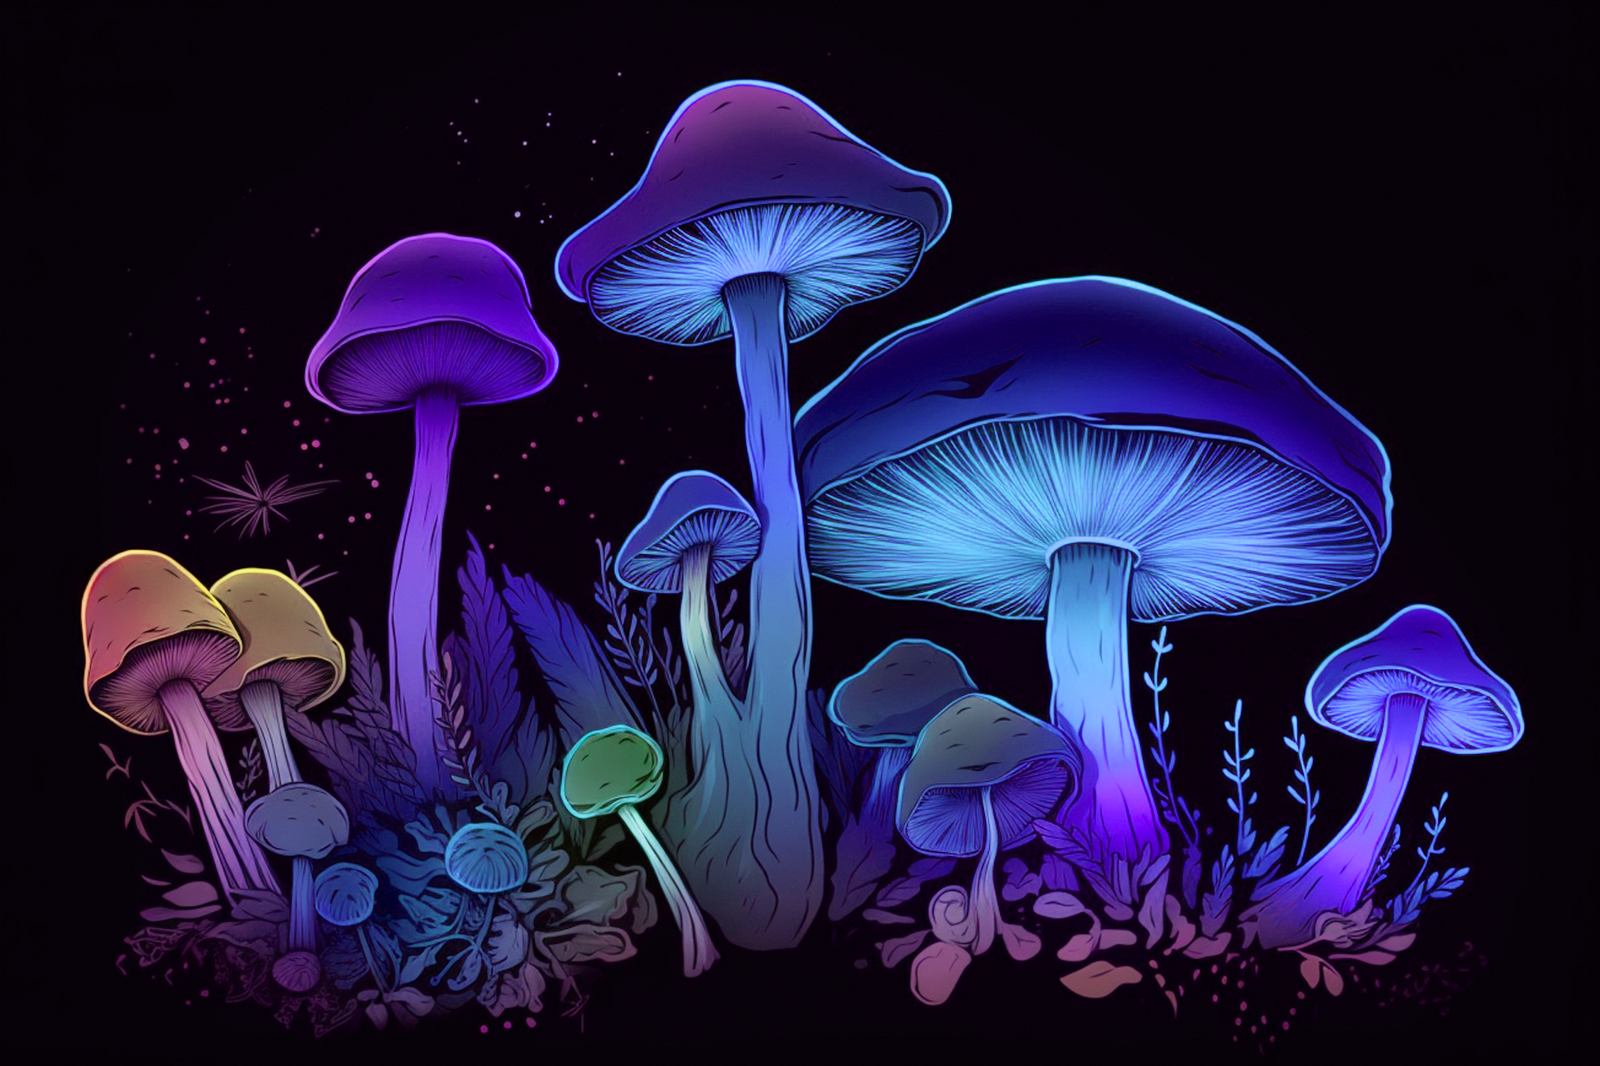 Vibrant multicolored mushrooms in a dark backdrop